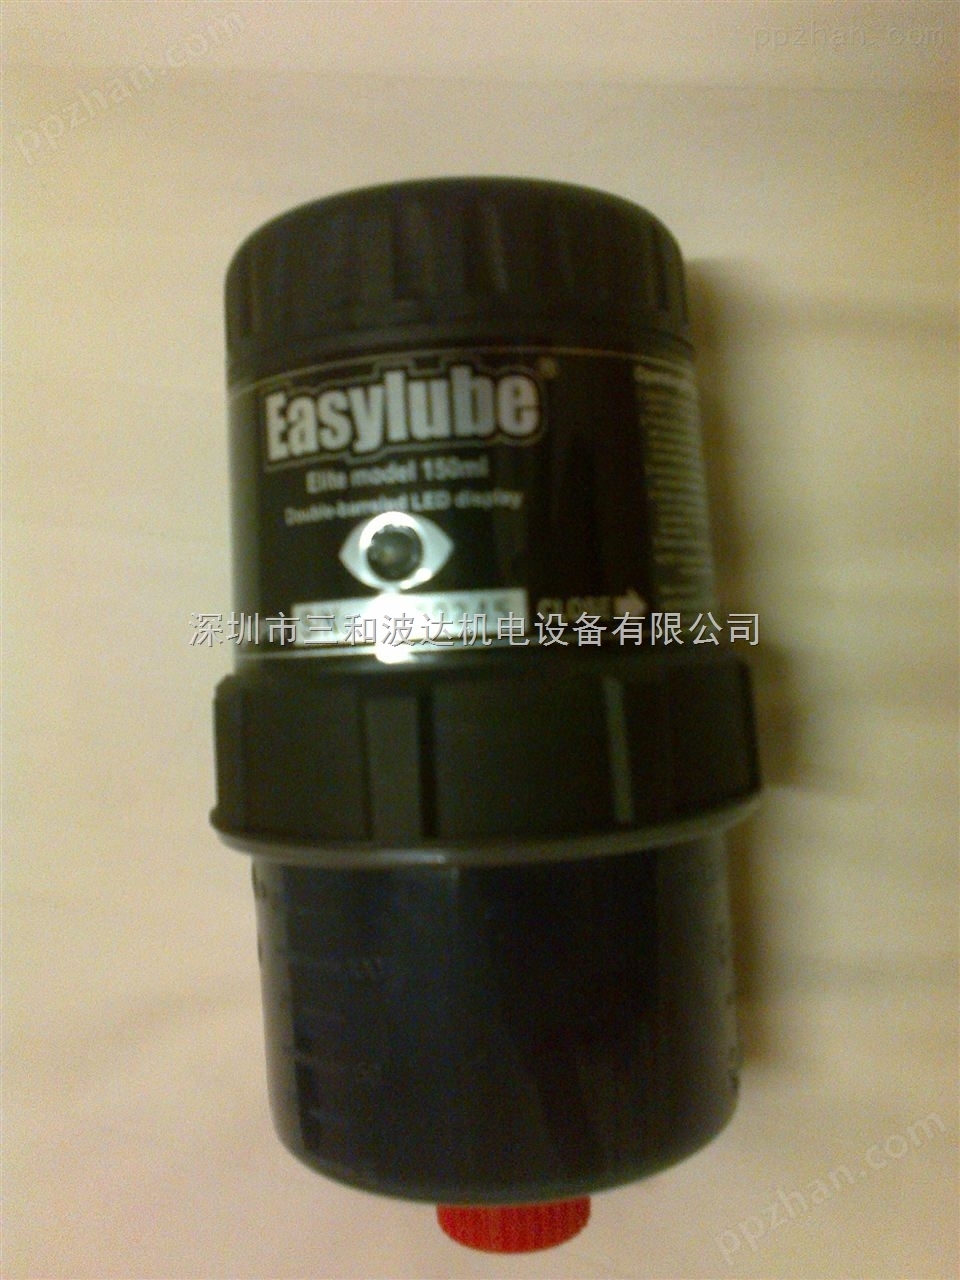 Easylube集中自动润滑泵|递进式润装置|车床润滑系统